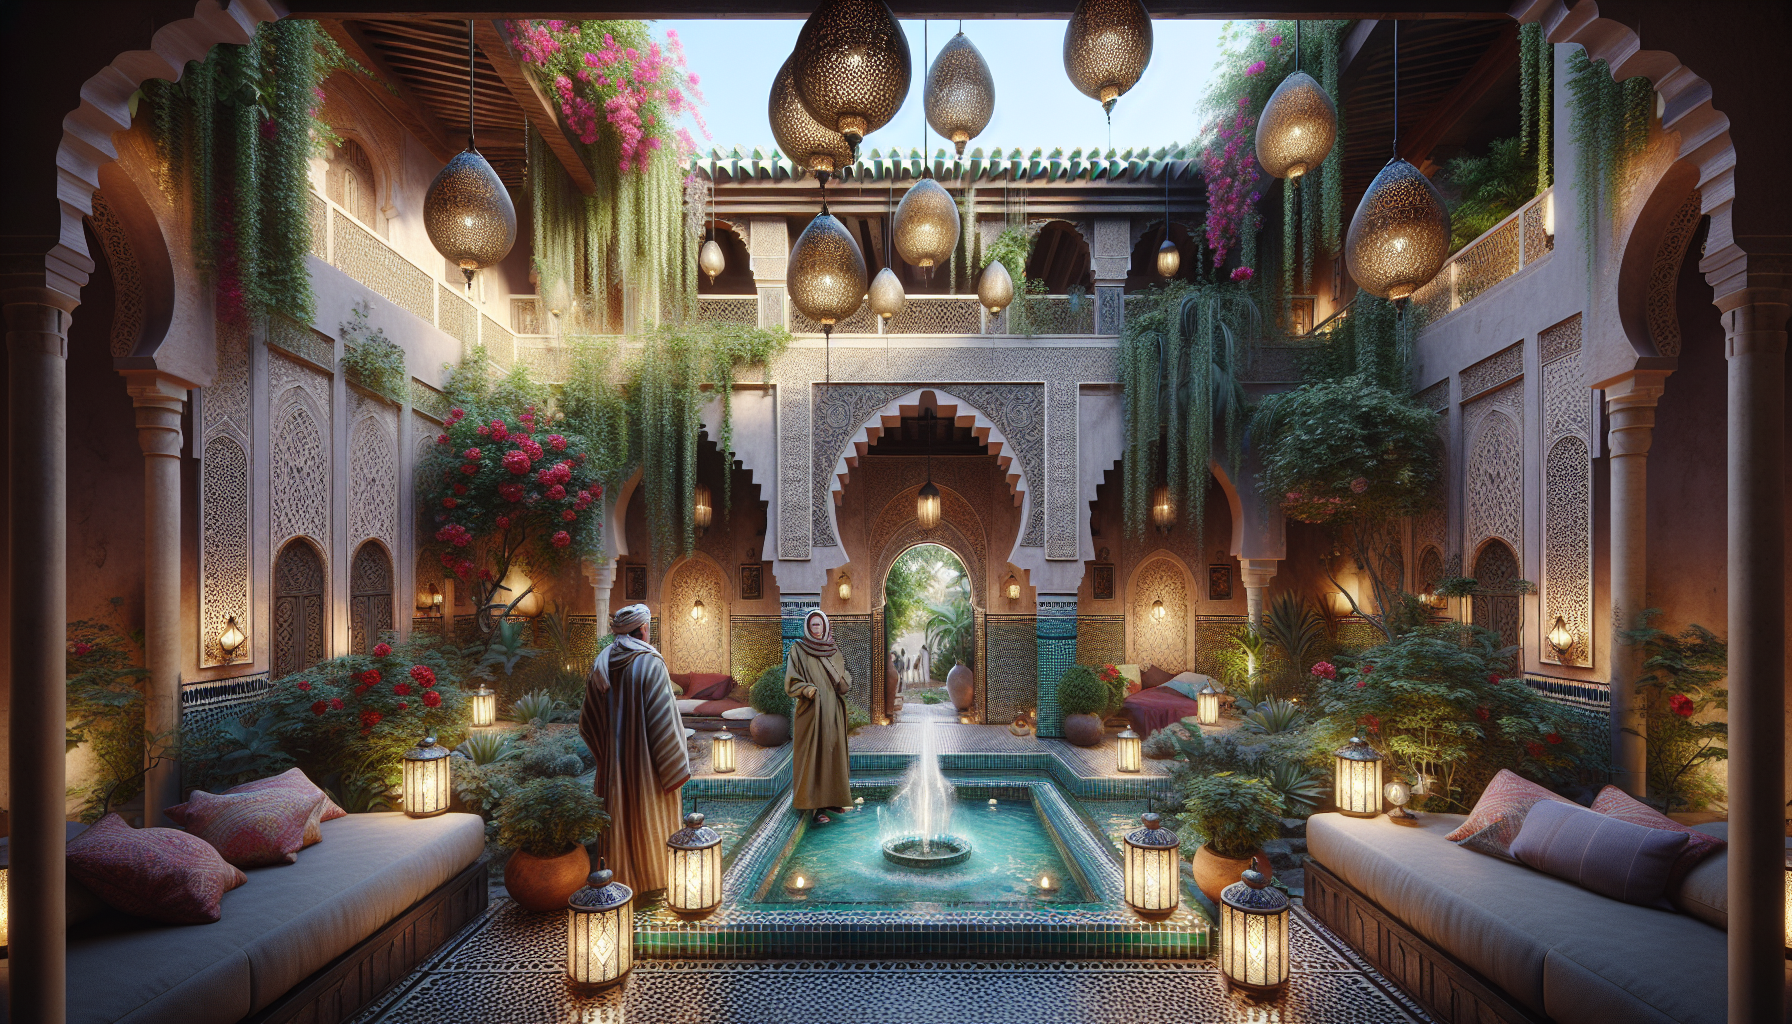 découvrez les riads de marrakech, des havres de charme, de luxe et de traditions authentiques, où se cachent des secrets à dévoiler.